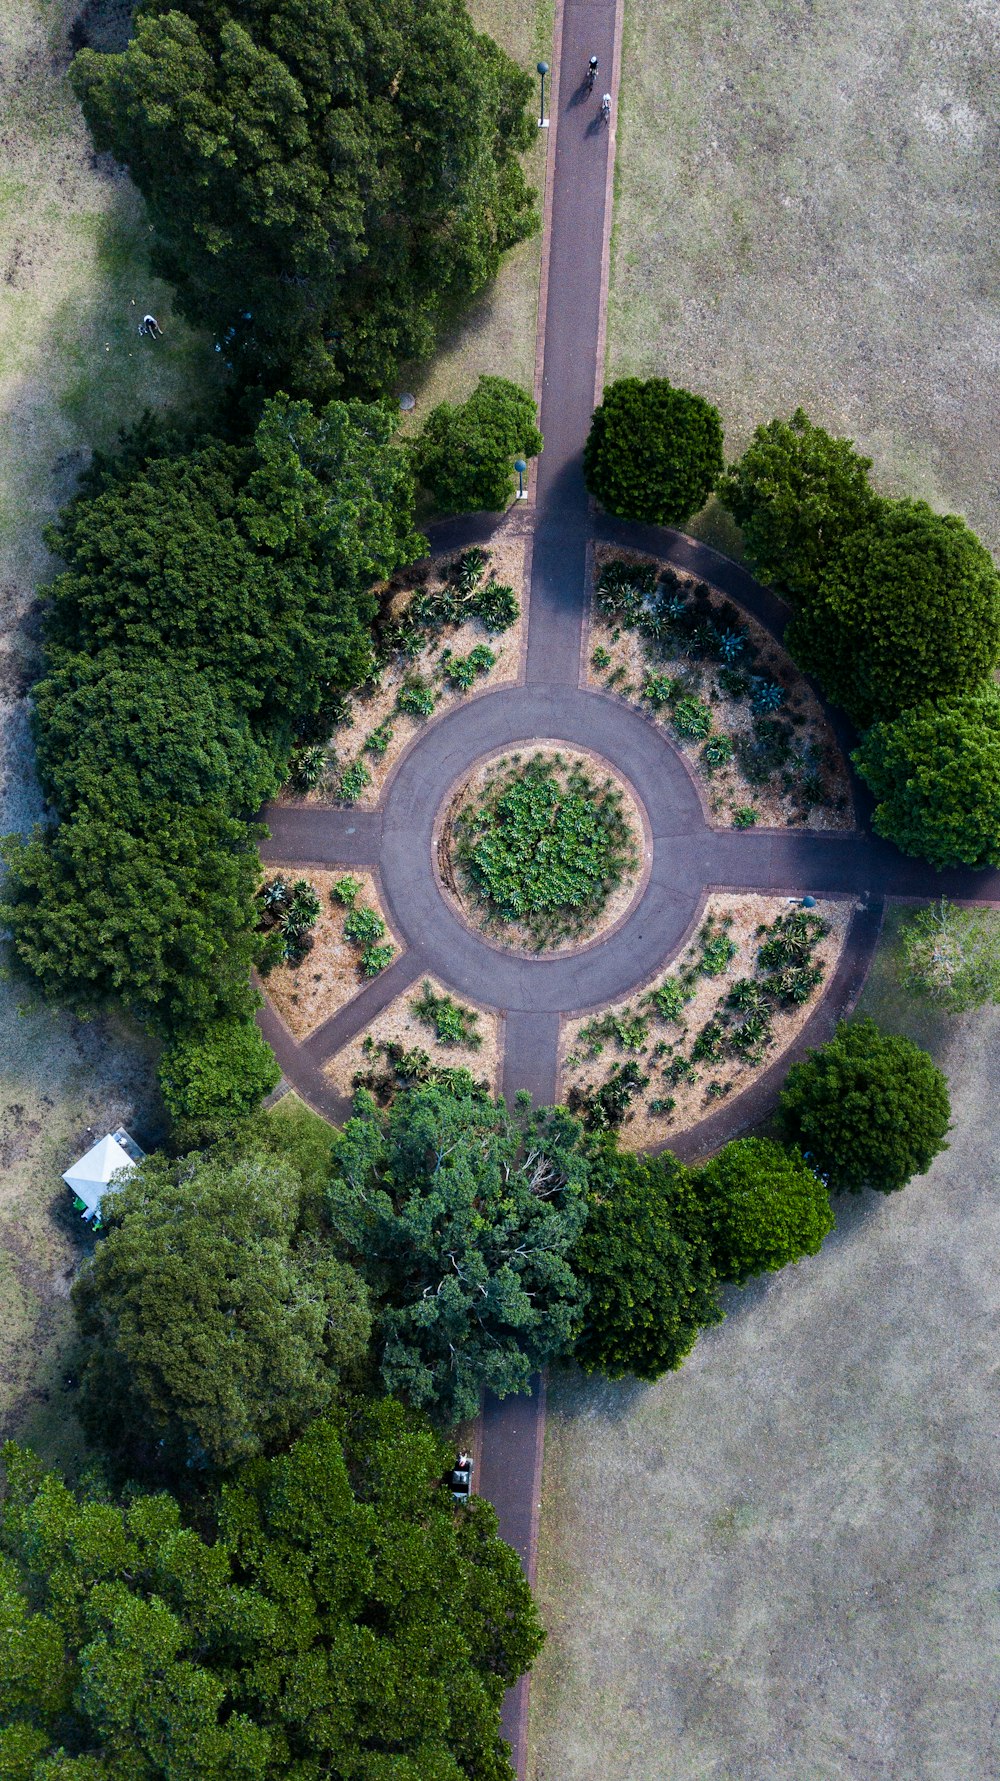 Luftaufnahmen des runden Parks, der tagsüber von Bäumen umgeben ist